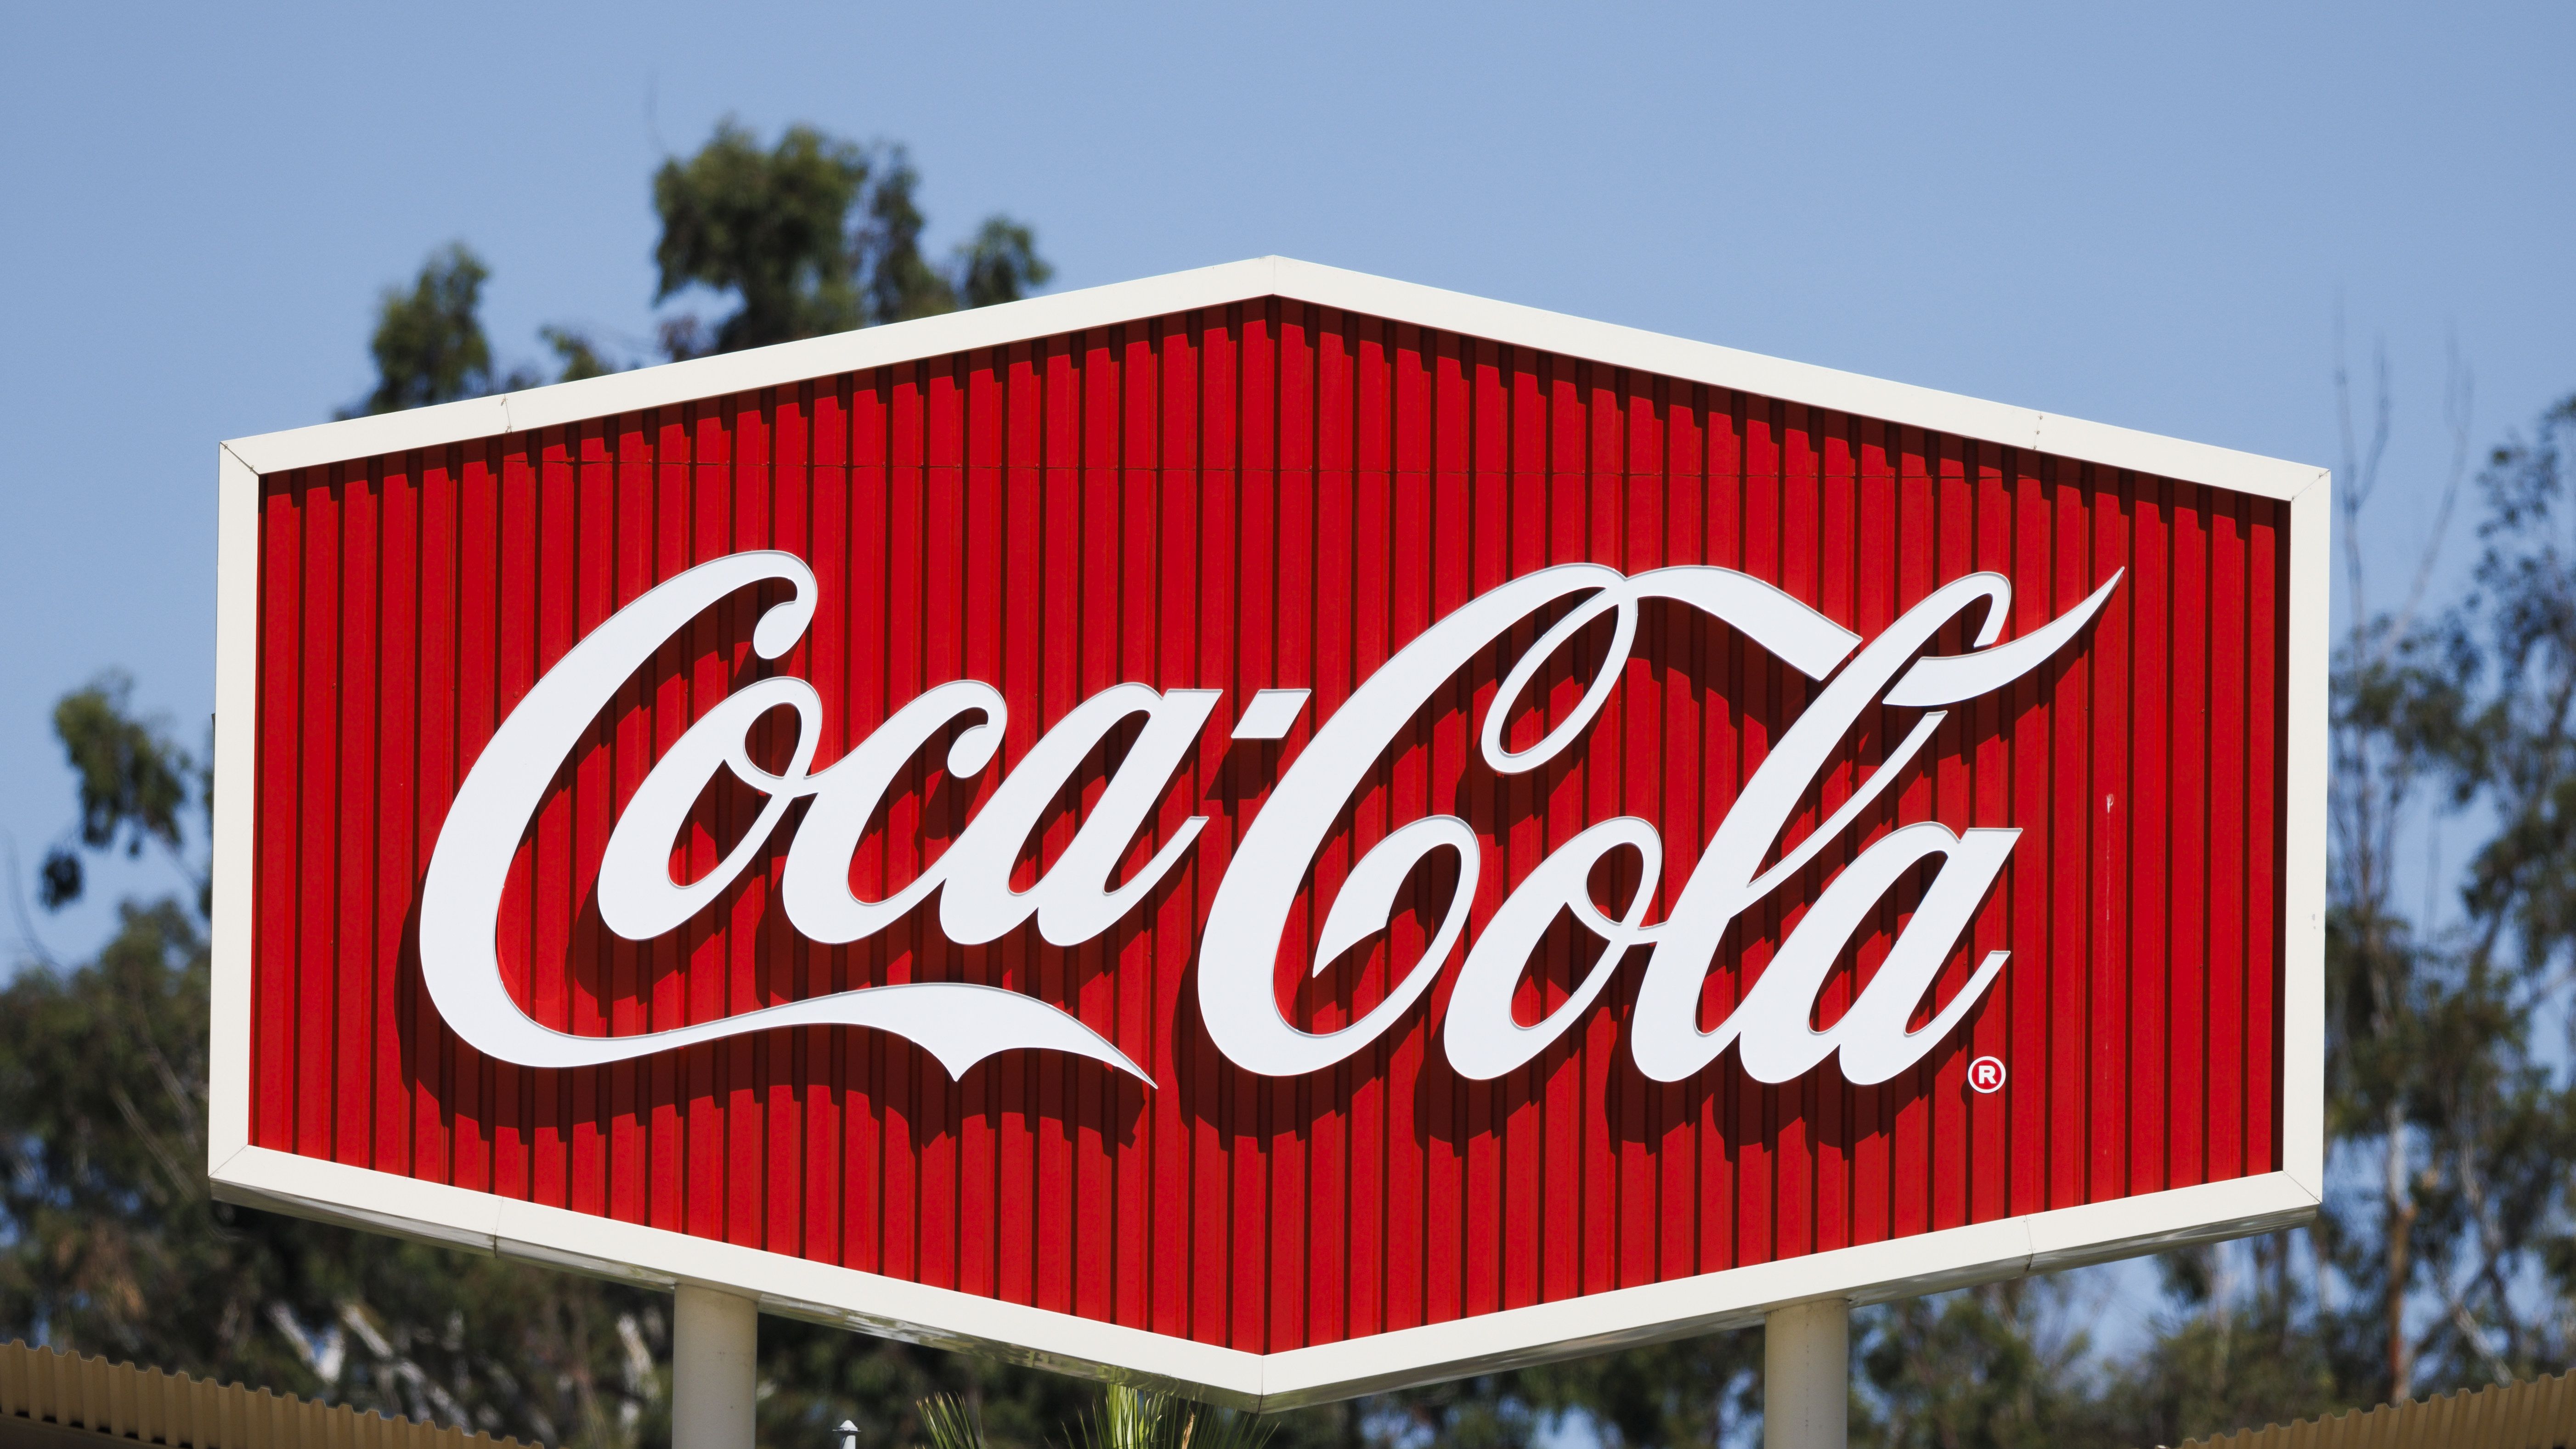 Invenzione Coca-Cola, conosci la sua vera storia? Leggila qui!